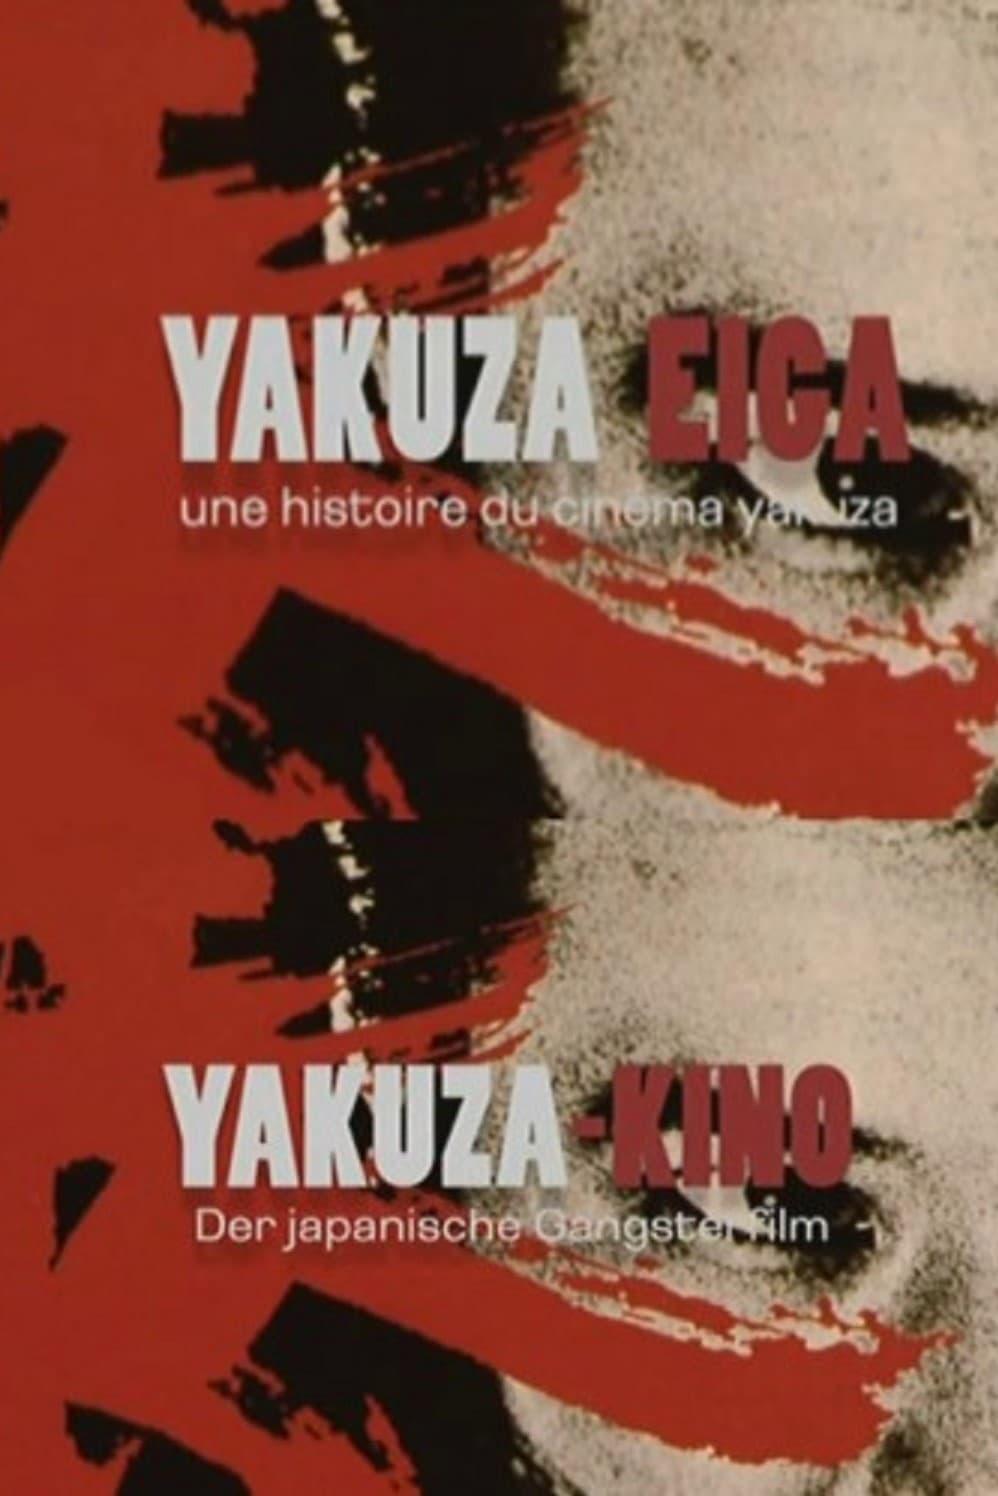 Yakuza-Kino - Der japanische Gangsterfilm poster